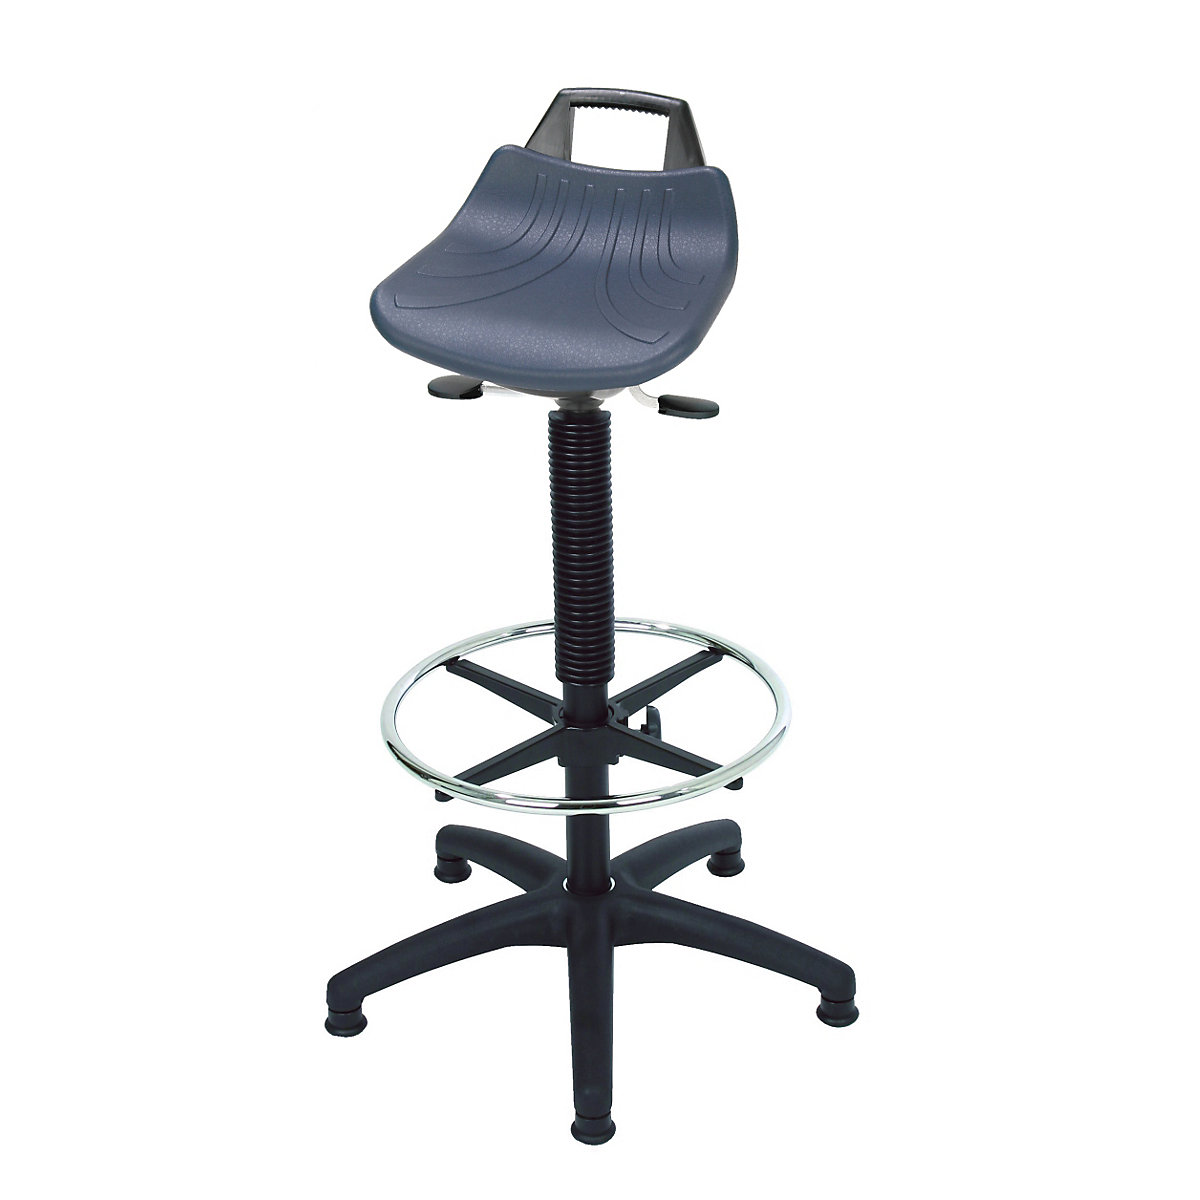 Radni stolac s mogućnošću namještanja visine pomoću plinskih opruga